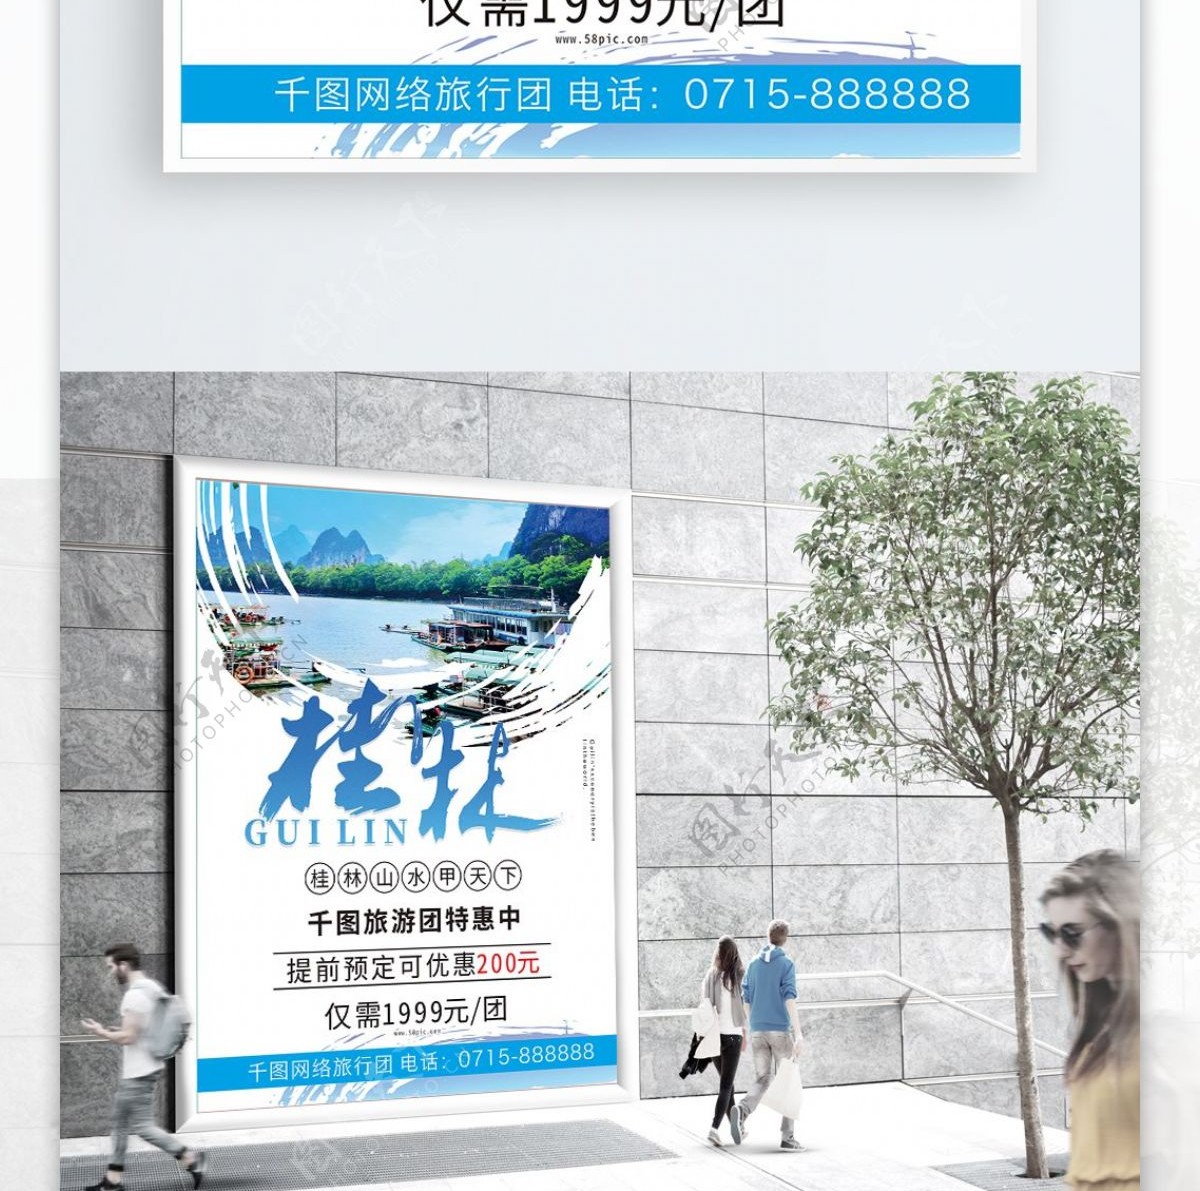 大气字体设计桂林旅游海报